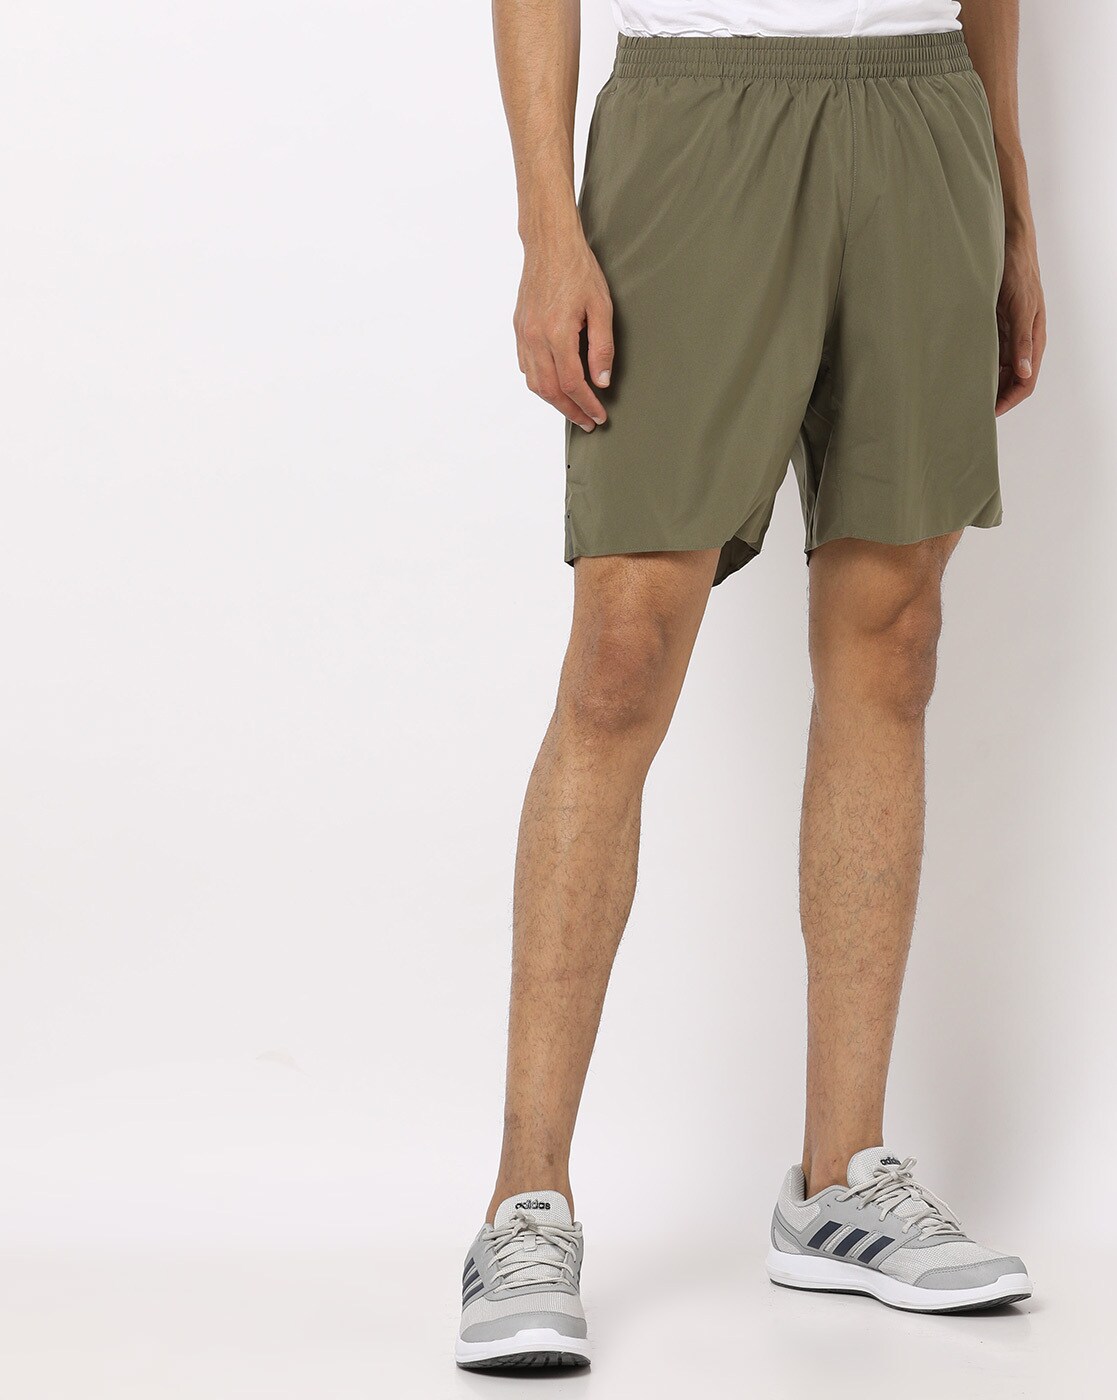 Buy Olive Green Shorts \u0026 3/4ths for Men 